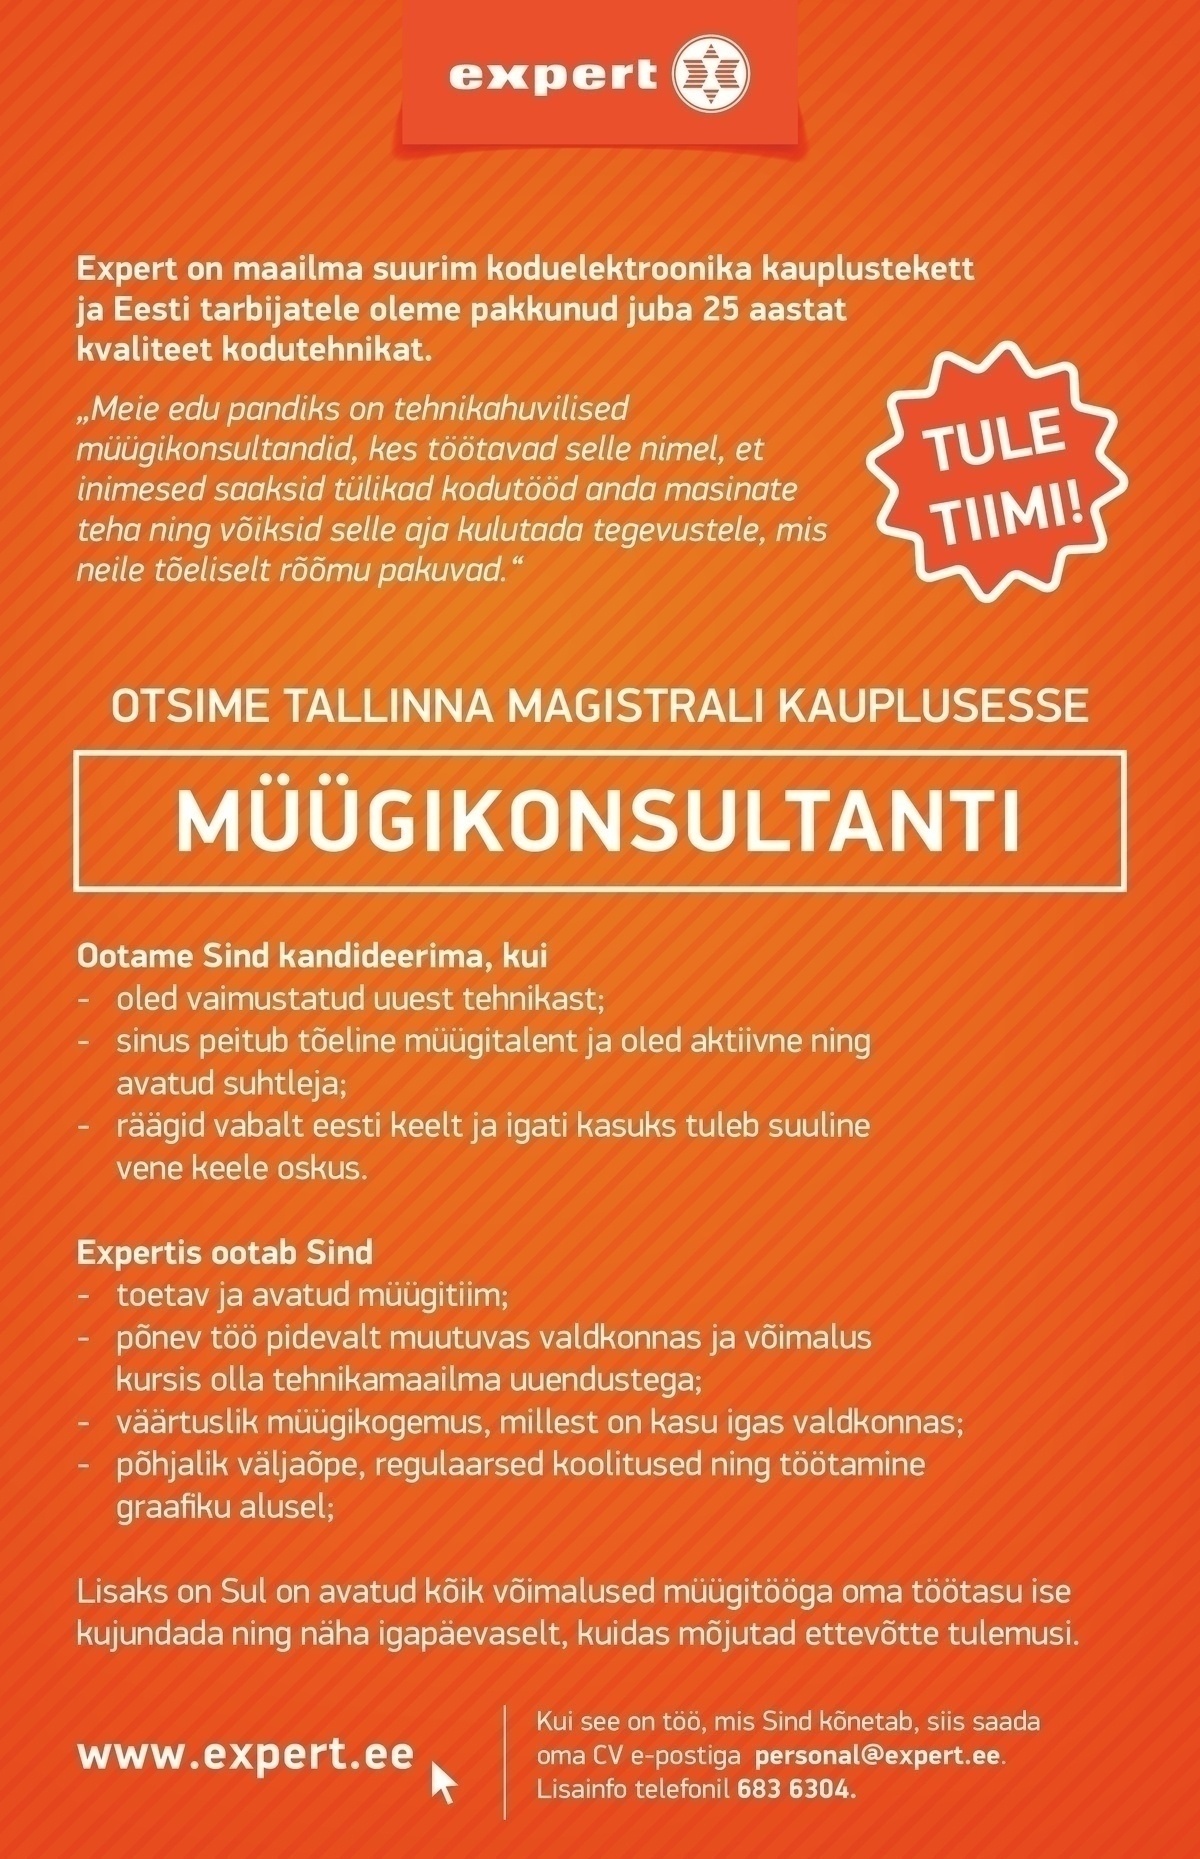 Expert Eesti AS Müügikonsultant (Tallinnas Magistrali Keskuse kaupluses)